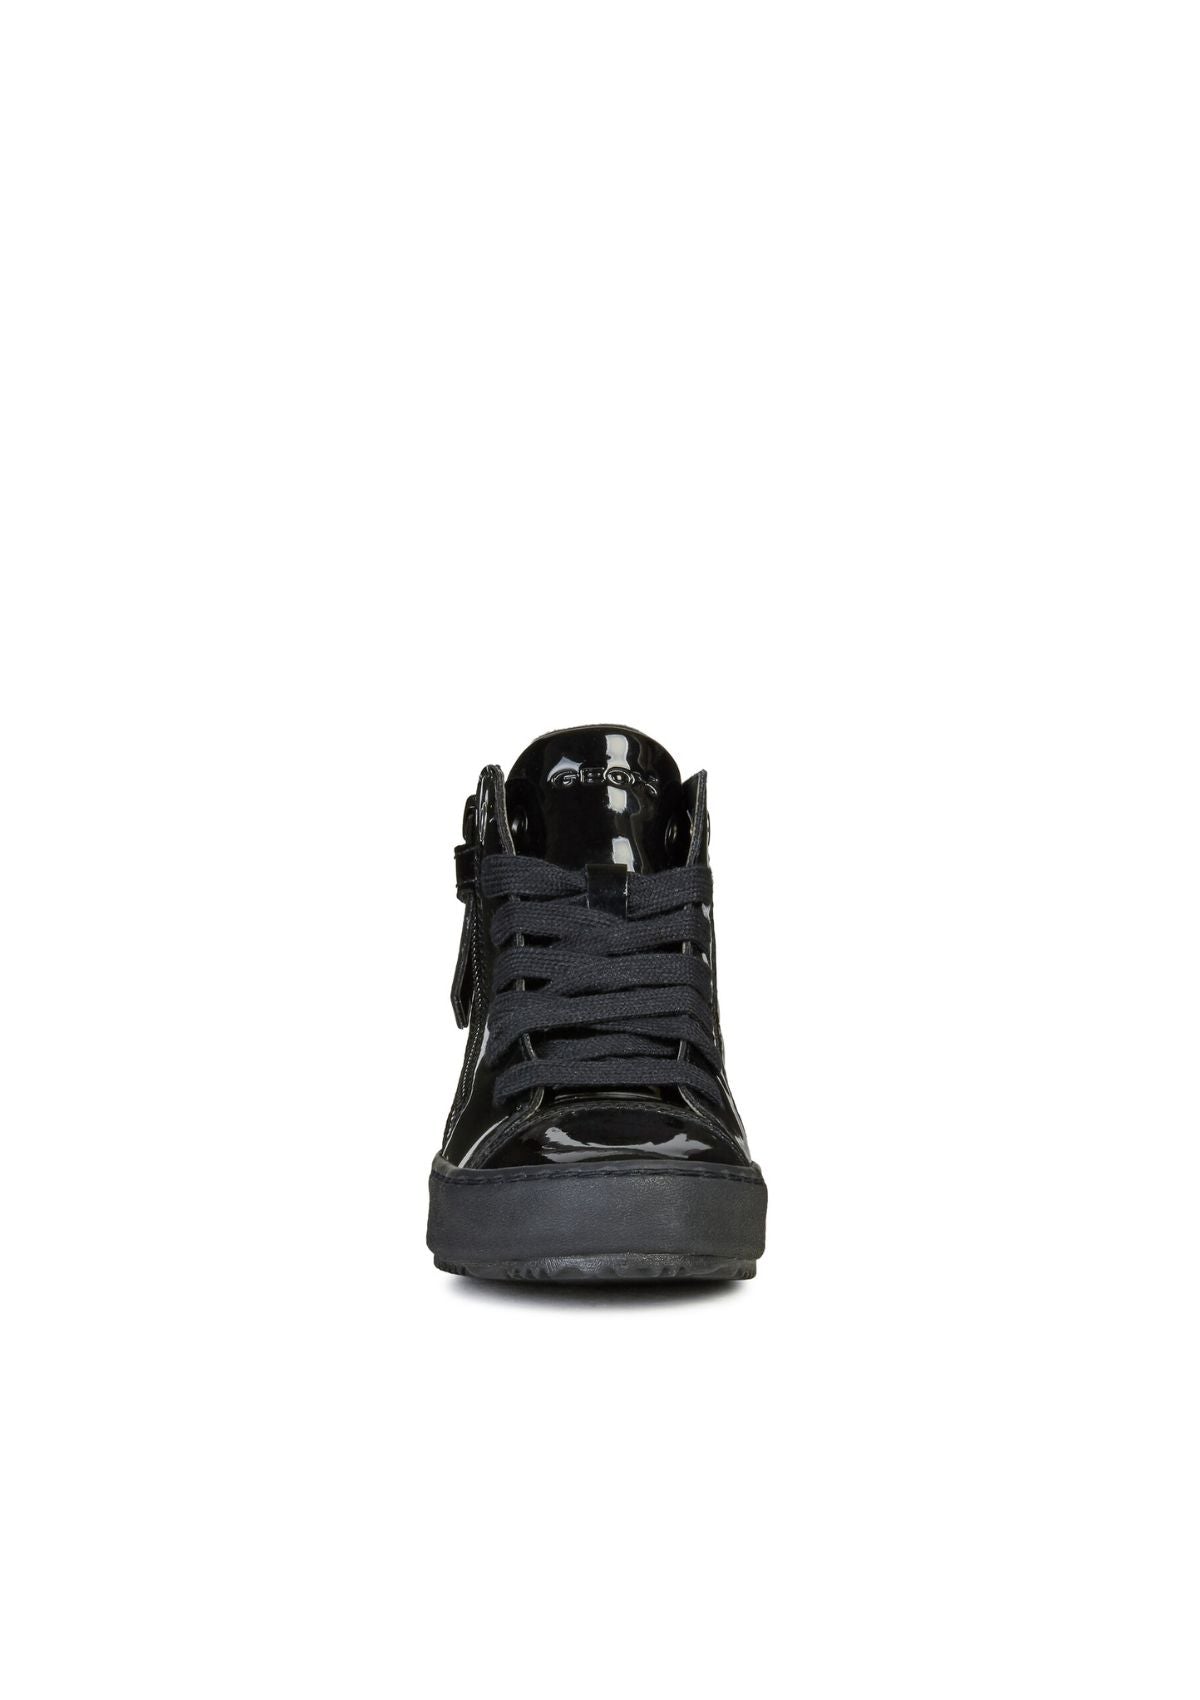 Geox Girls School Shoes KALISPERA Black front